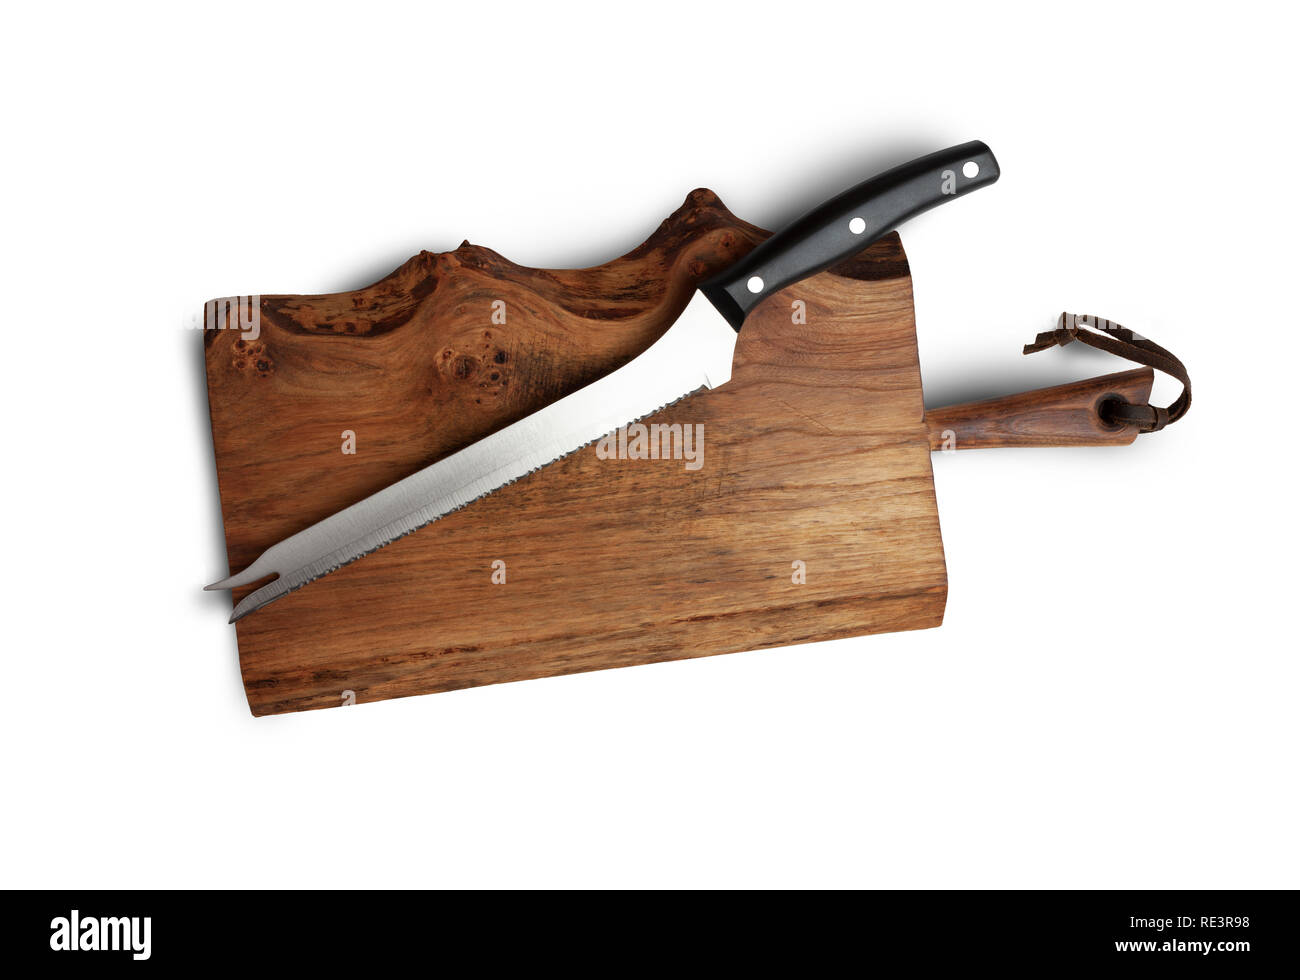 La cuchilla dentada para cocina en madera antigua junta de corte Foto de stock